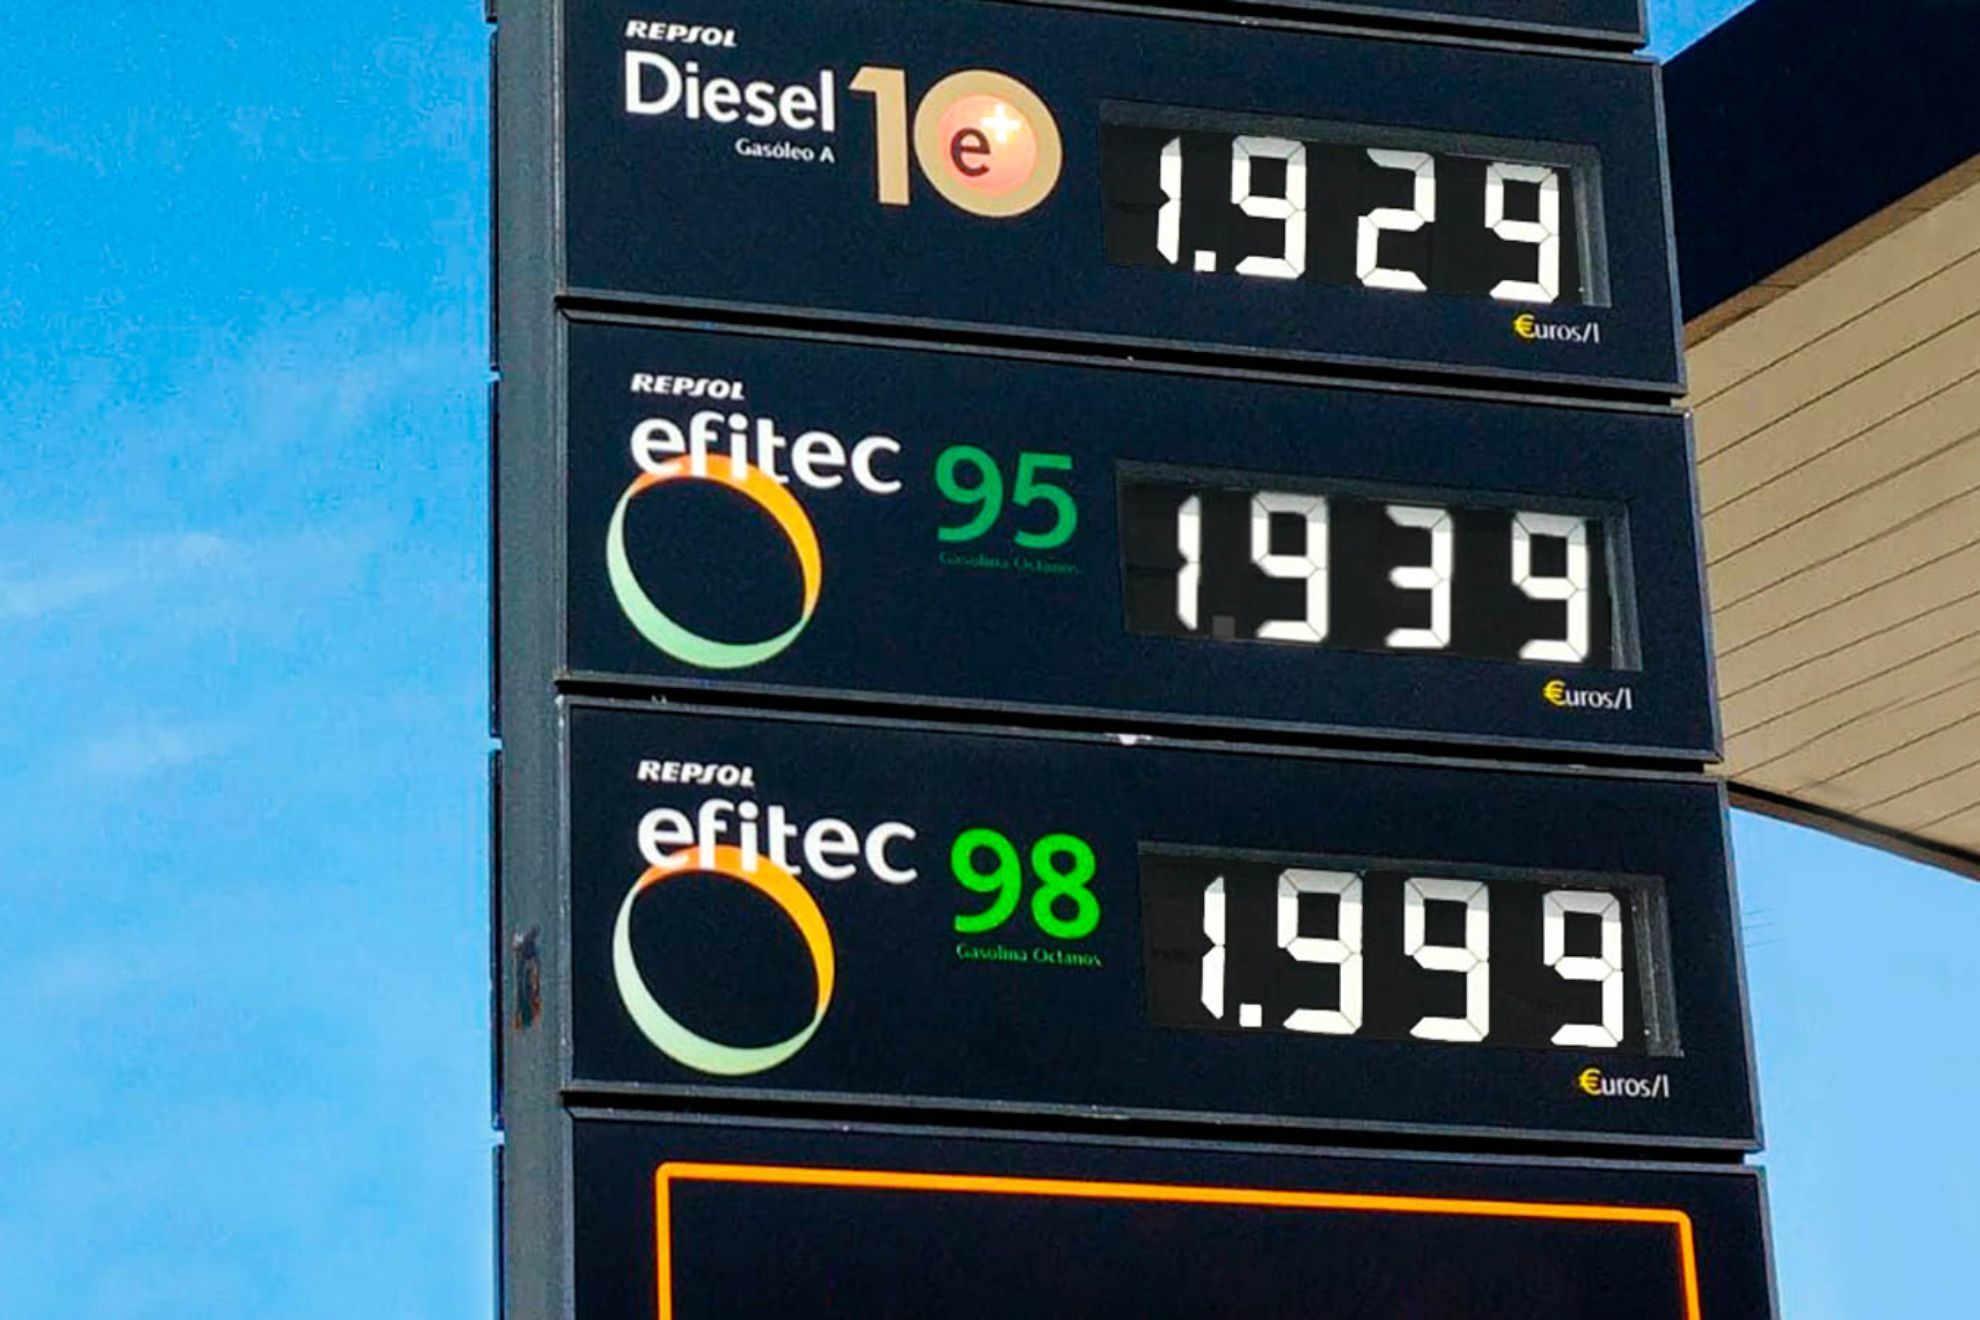 Qu ayudas para la gasolina habr en Espaa en 2023?